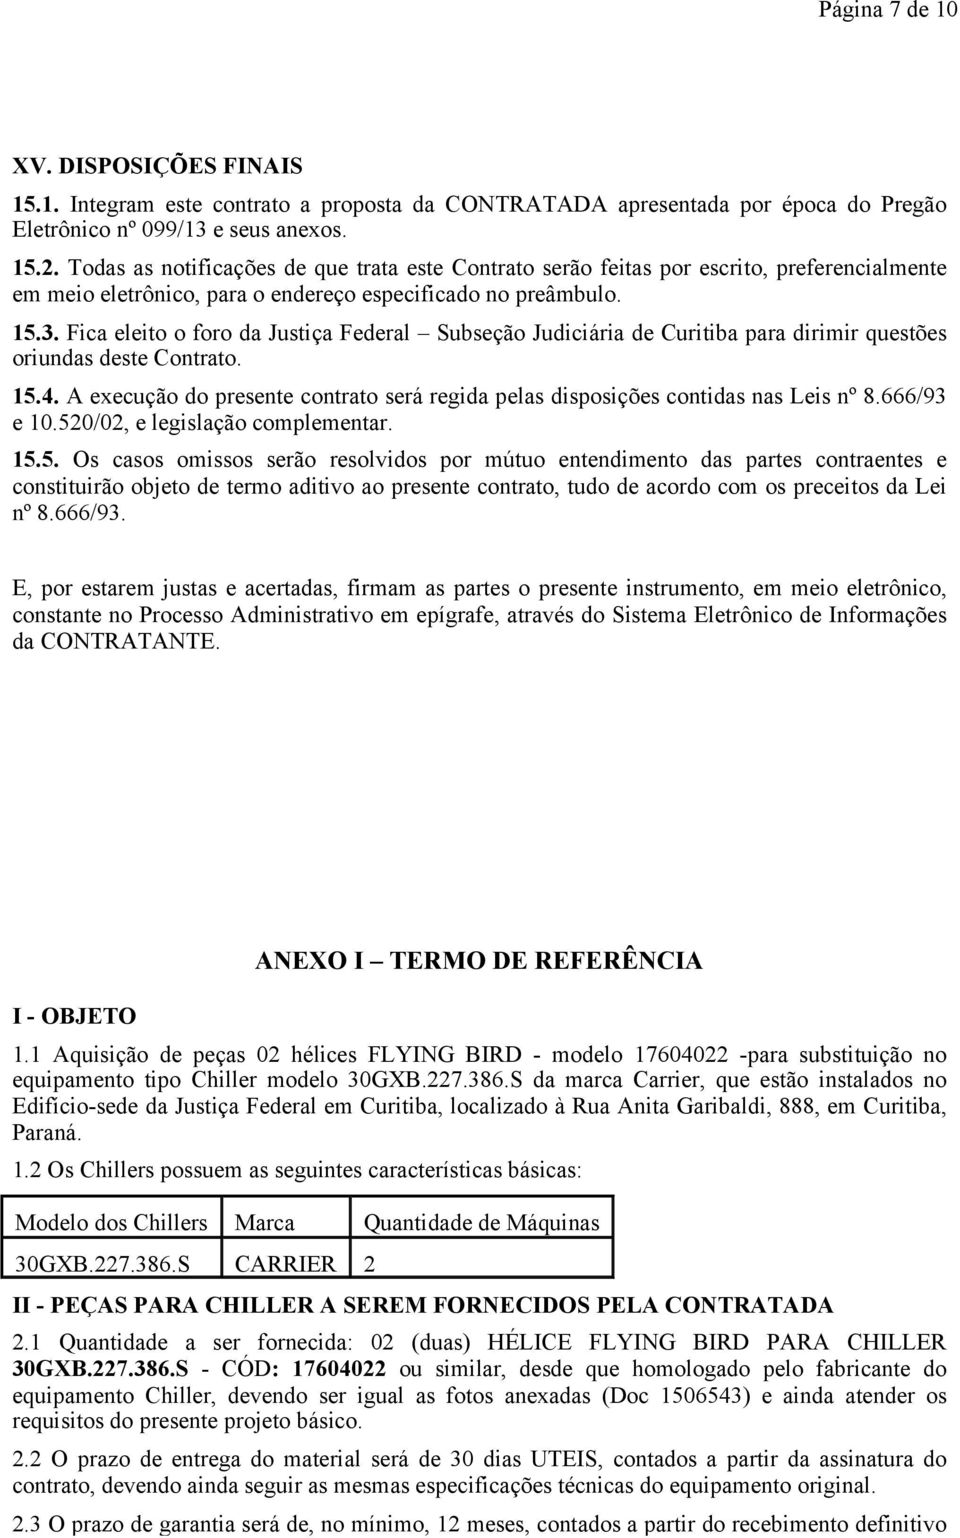 Fica eleito o foro da Justiça Federal Subseção Judiciária de Curitiba para dirimir questões oriundas deste Contrato. 15.4.